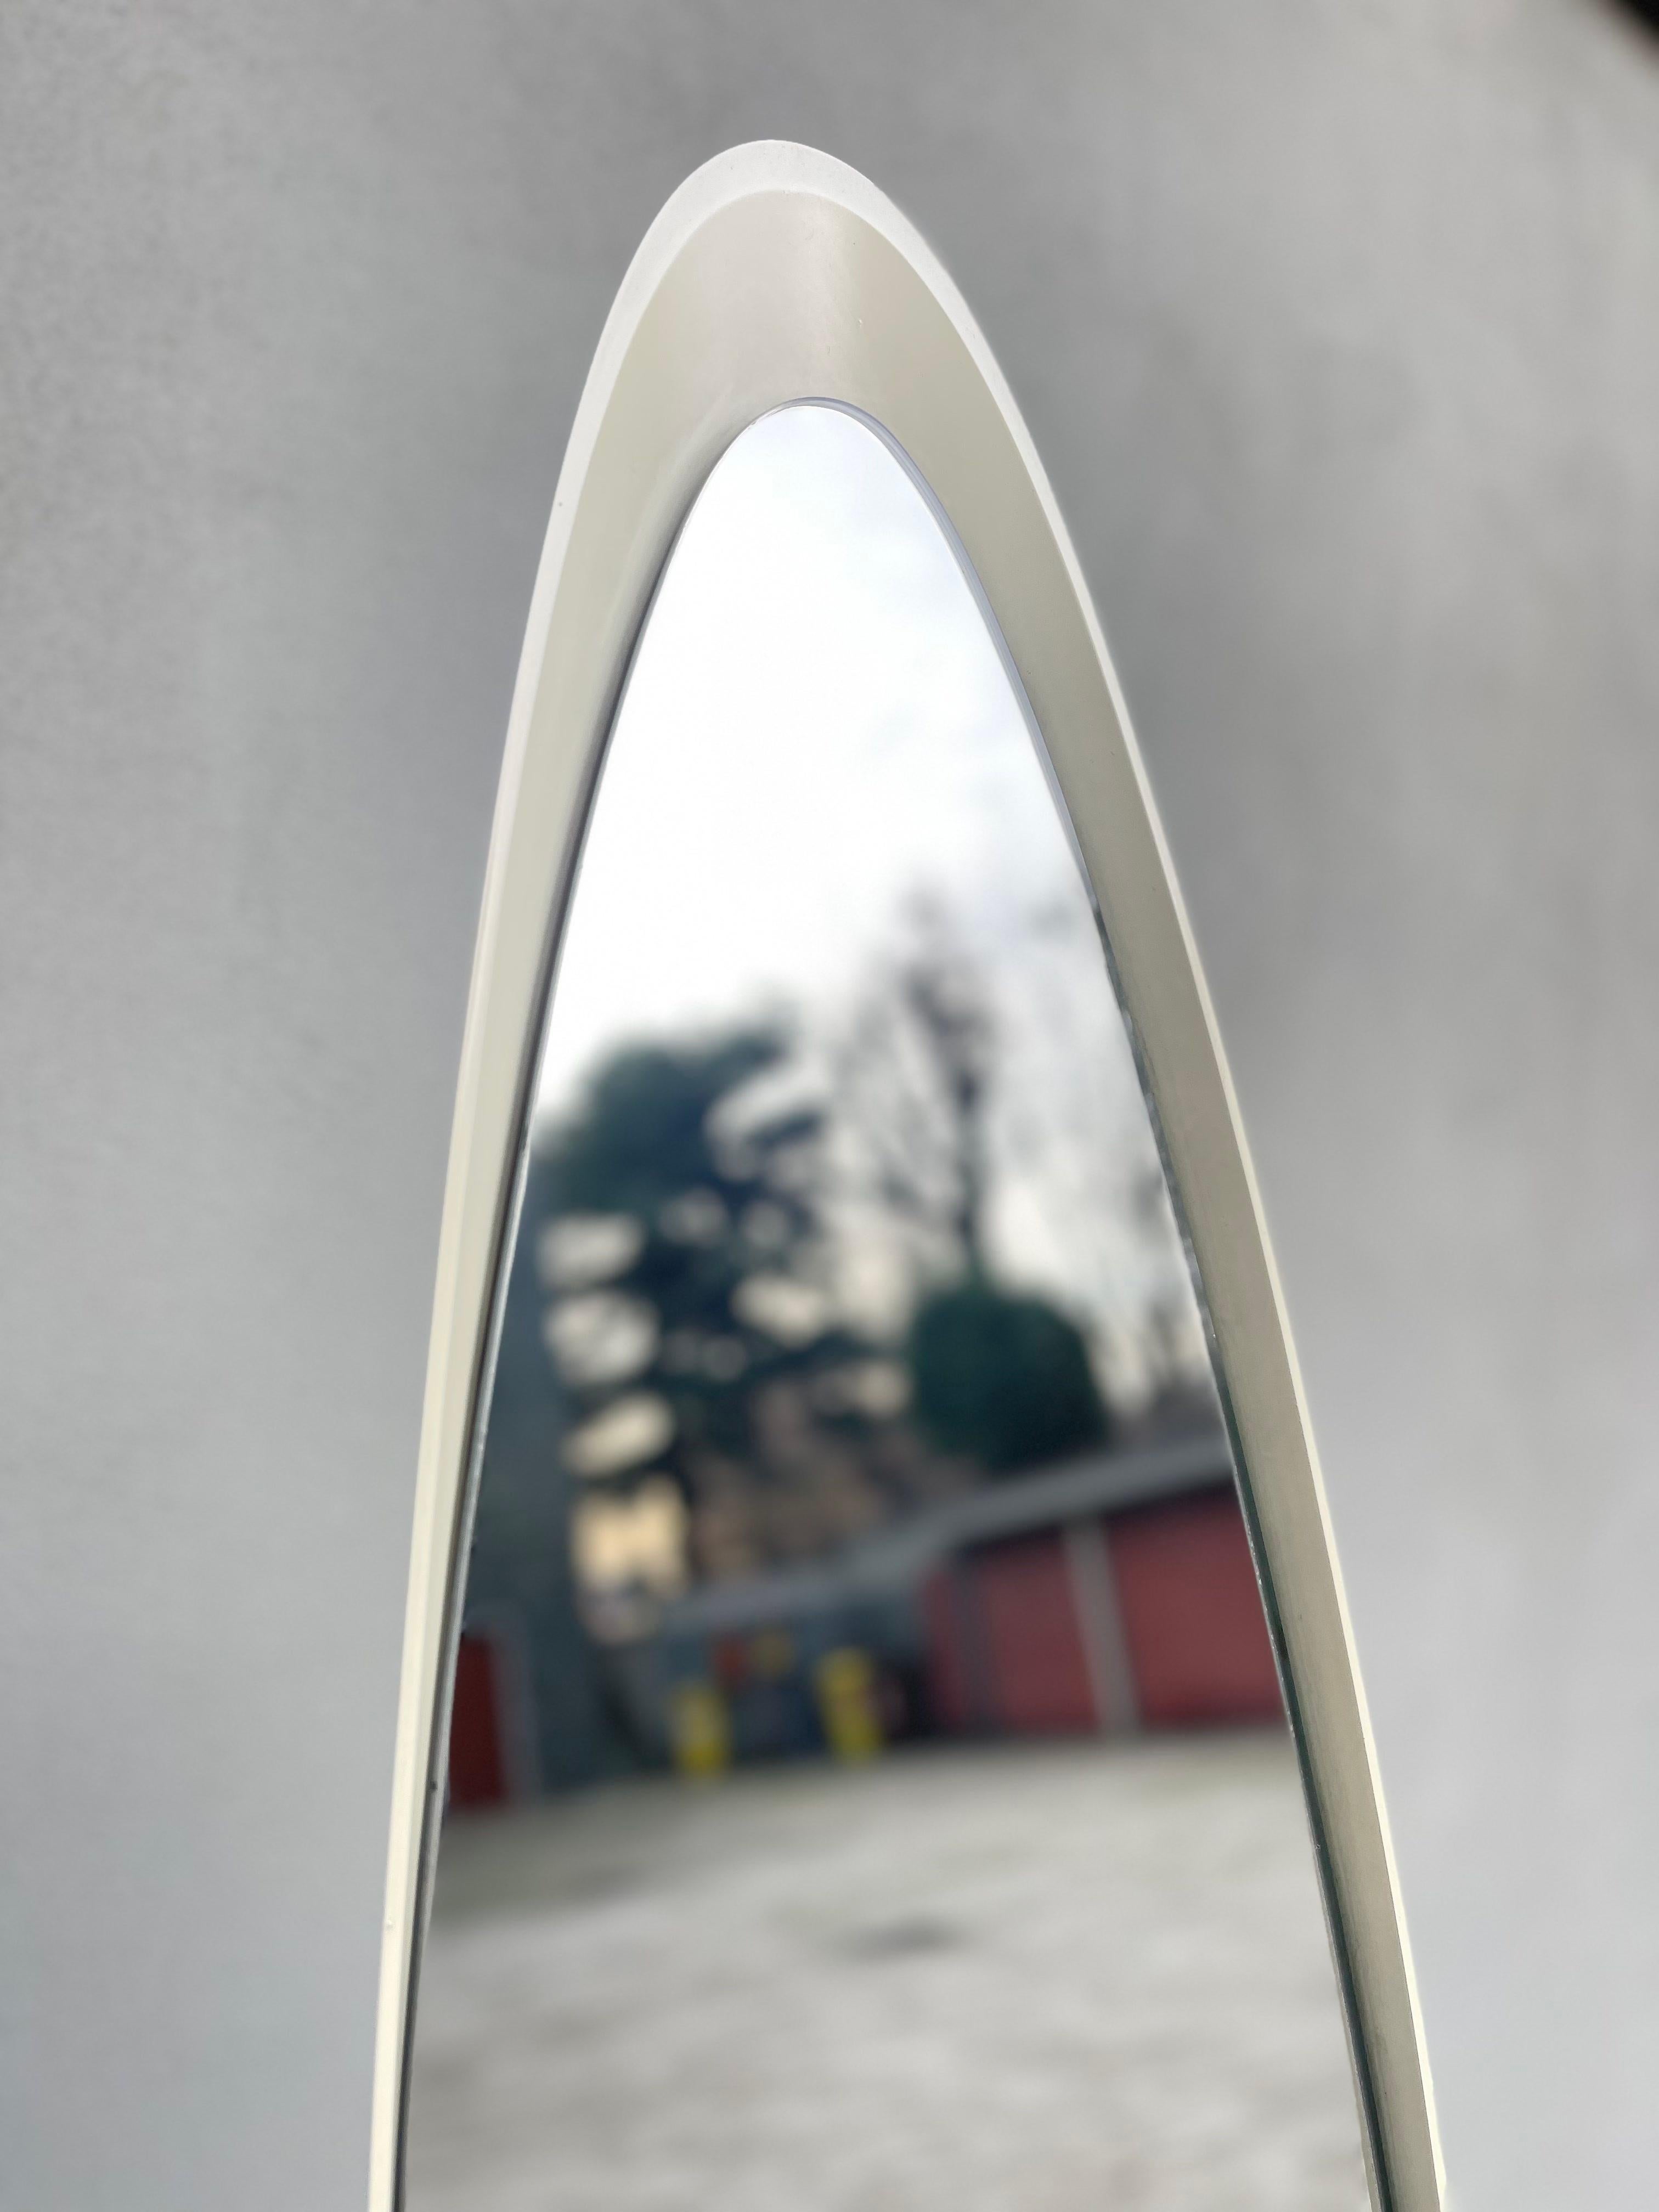 Descrizione dell'oggetto
Particolare specchio italiano a unghia realizzato in PVC bianco. Designer Rodolfo Benetto. Periodo del design 1970 - 1979. Ottime condizioni bellissimo oggetto d'arredo vintage.



Dettagli